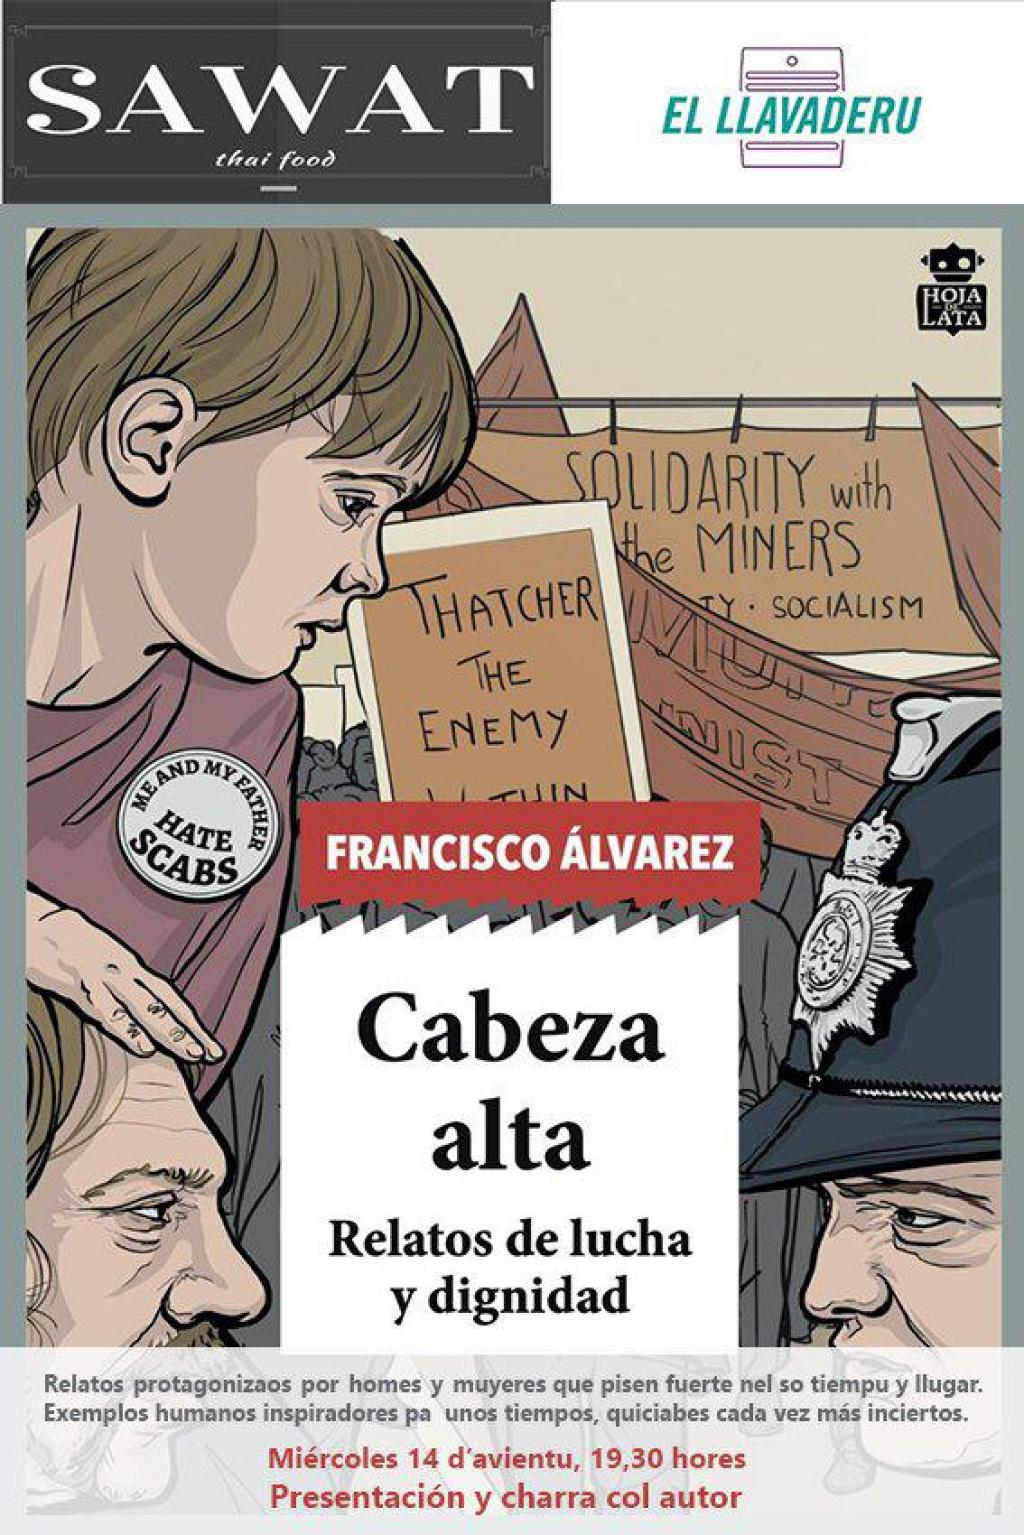 El Tapin - La Asociación Cultural El Llavaderu, presenta el último libro del escritor y periodista Francisco Álvarez